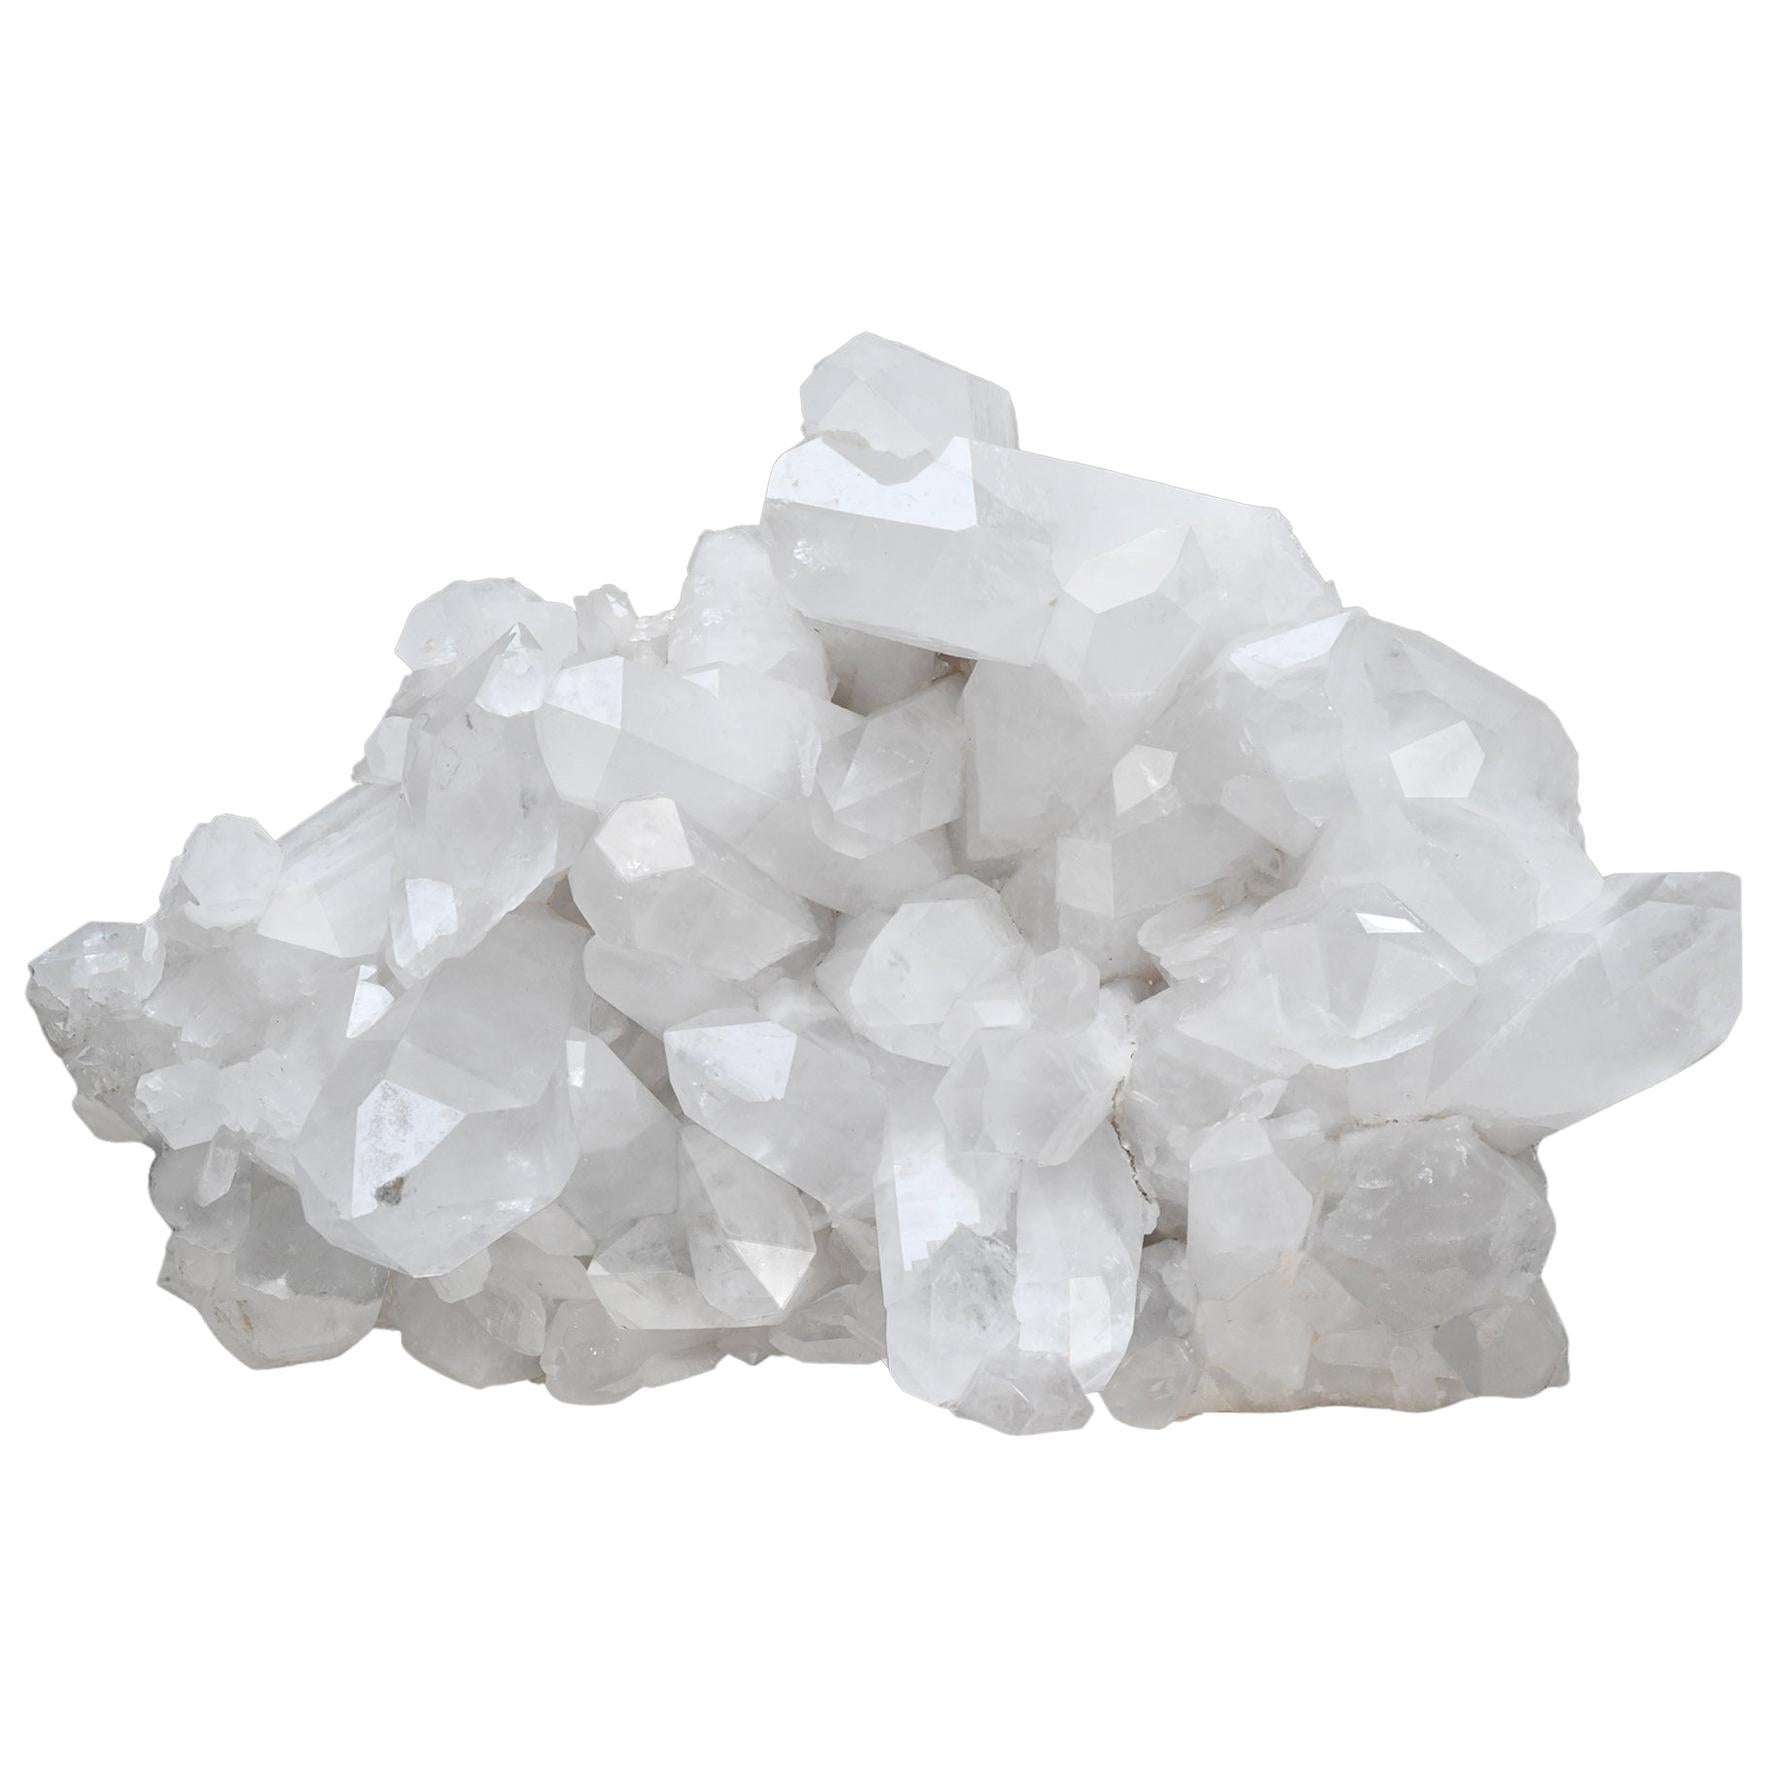 Rare Large Natural Rock Crystal Quartz Cluster For Sale